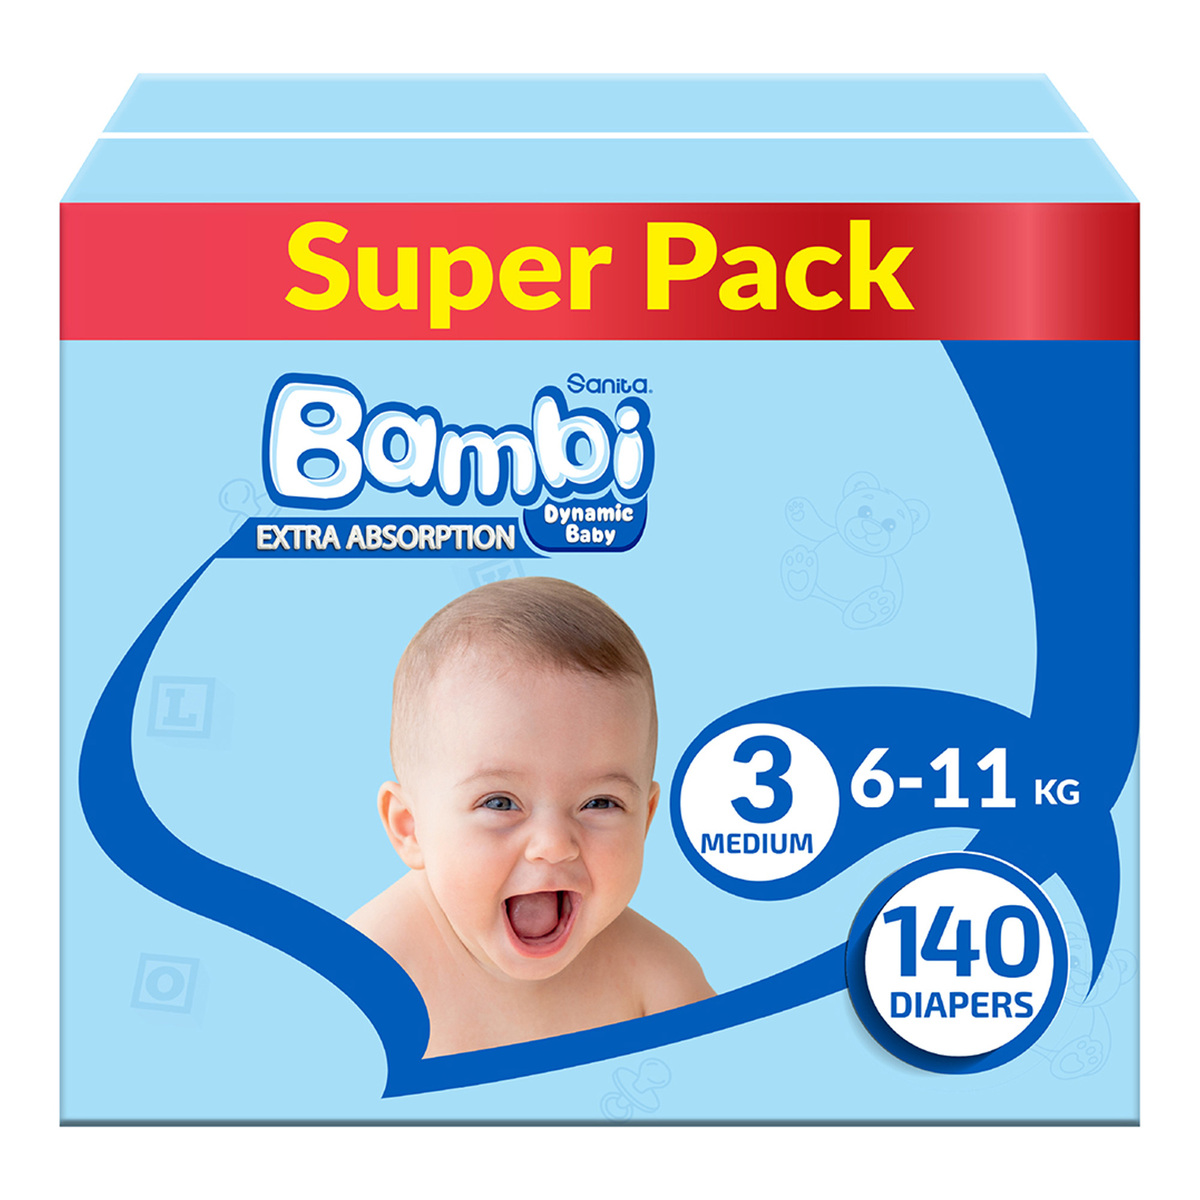 Sanita Bambi Baby Diaper Size 3 Medium 6-11kg 140 pcs Online at Best Price, Baby Nappies